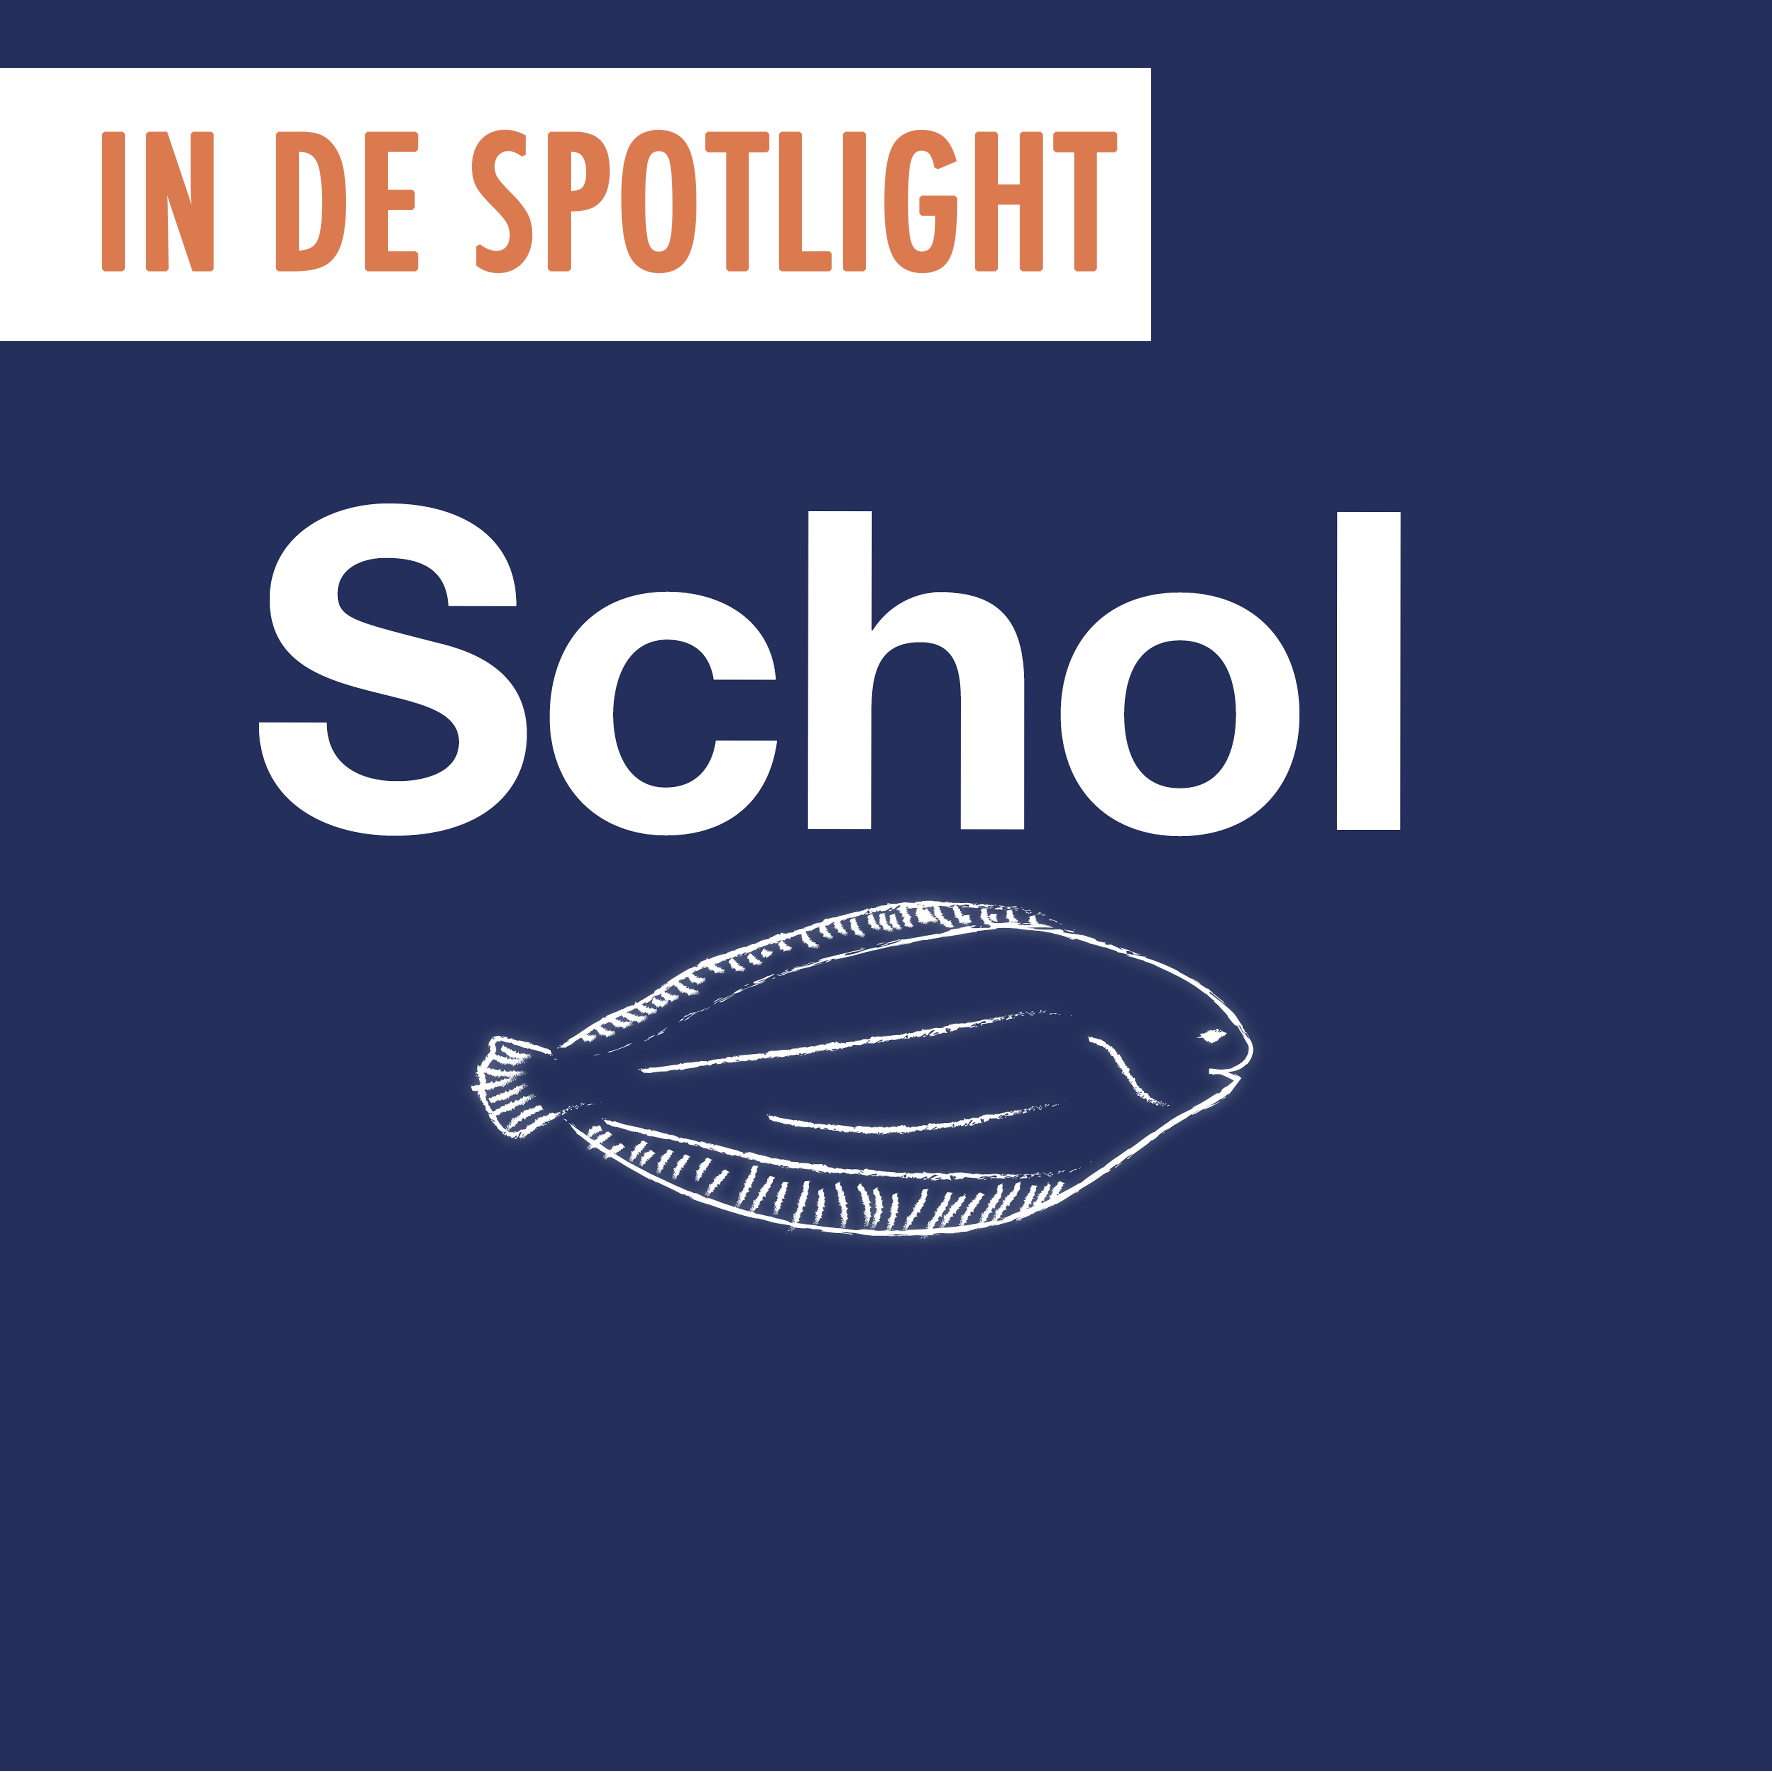 Spotlight van de maand juli: schol!